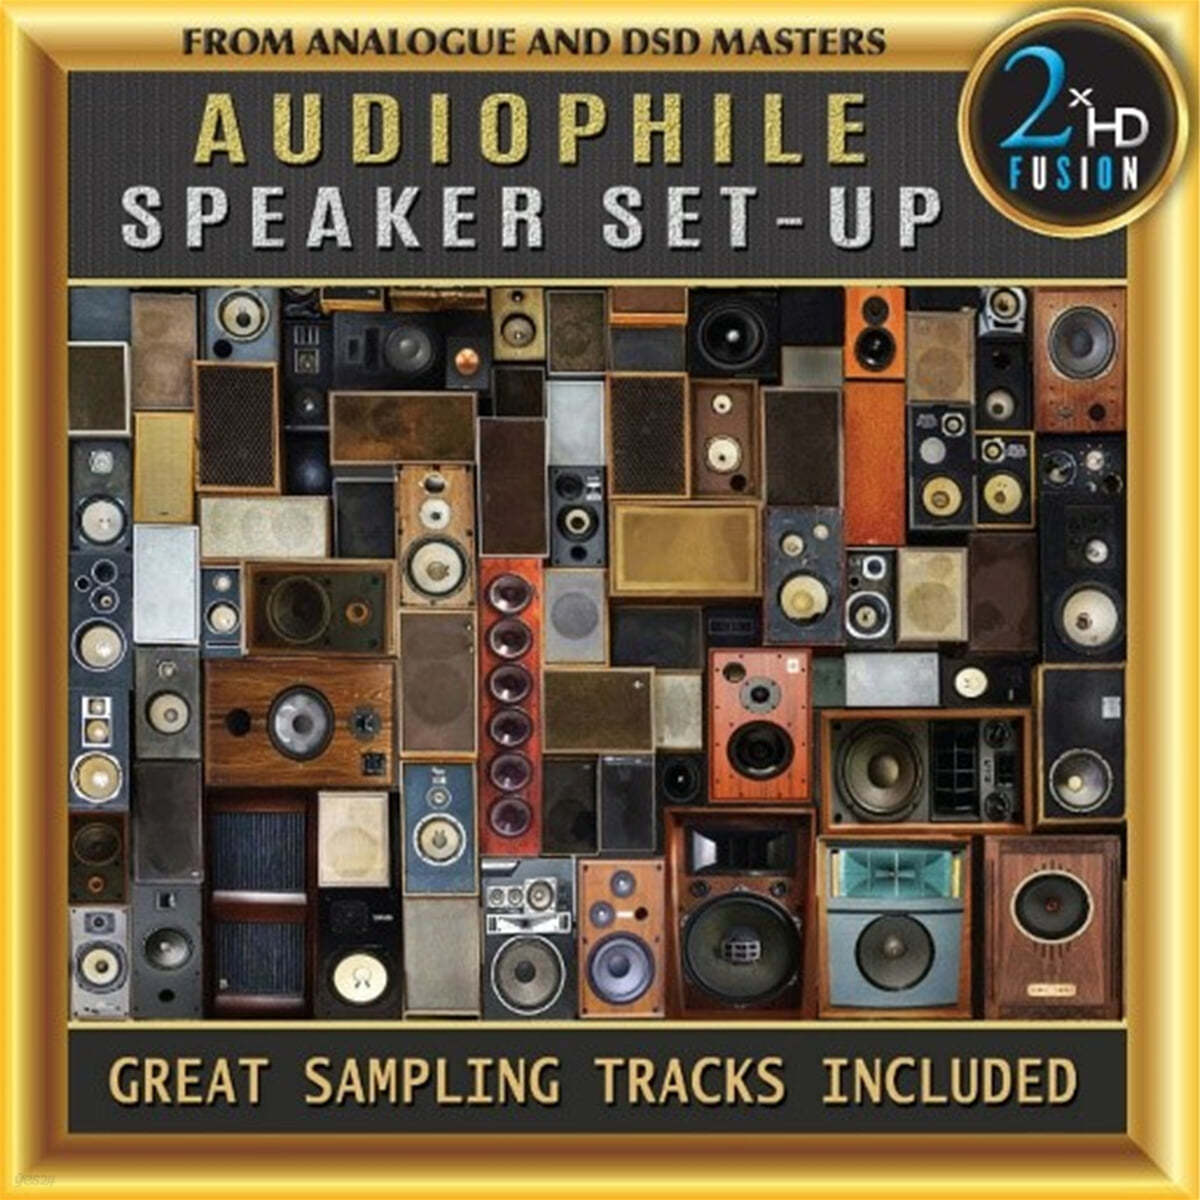 스피커 설정을 위한 오디오파일 음악 및 테스트 앨범 (Audiophile Speaker Set-Up)